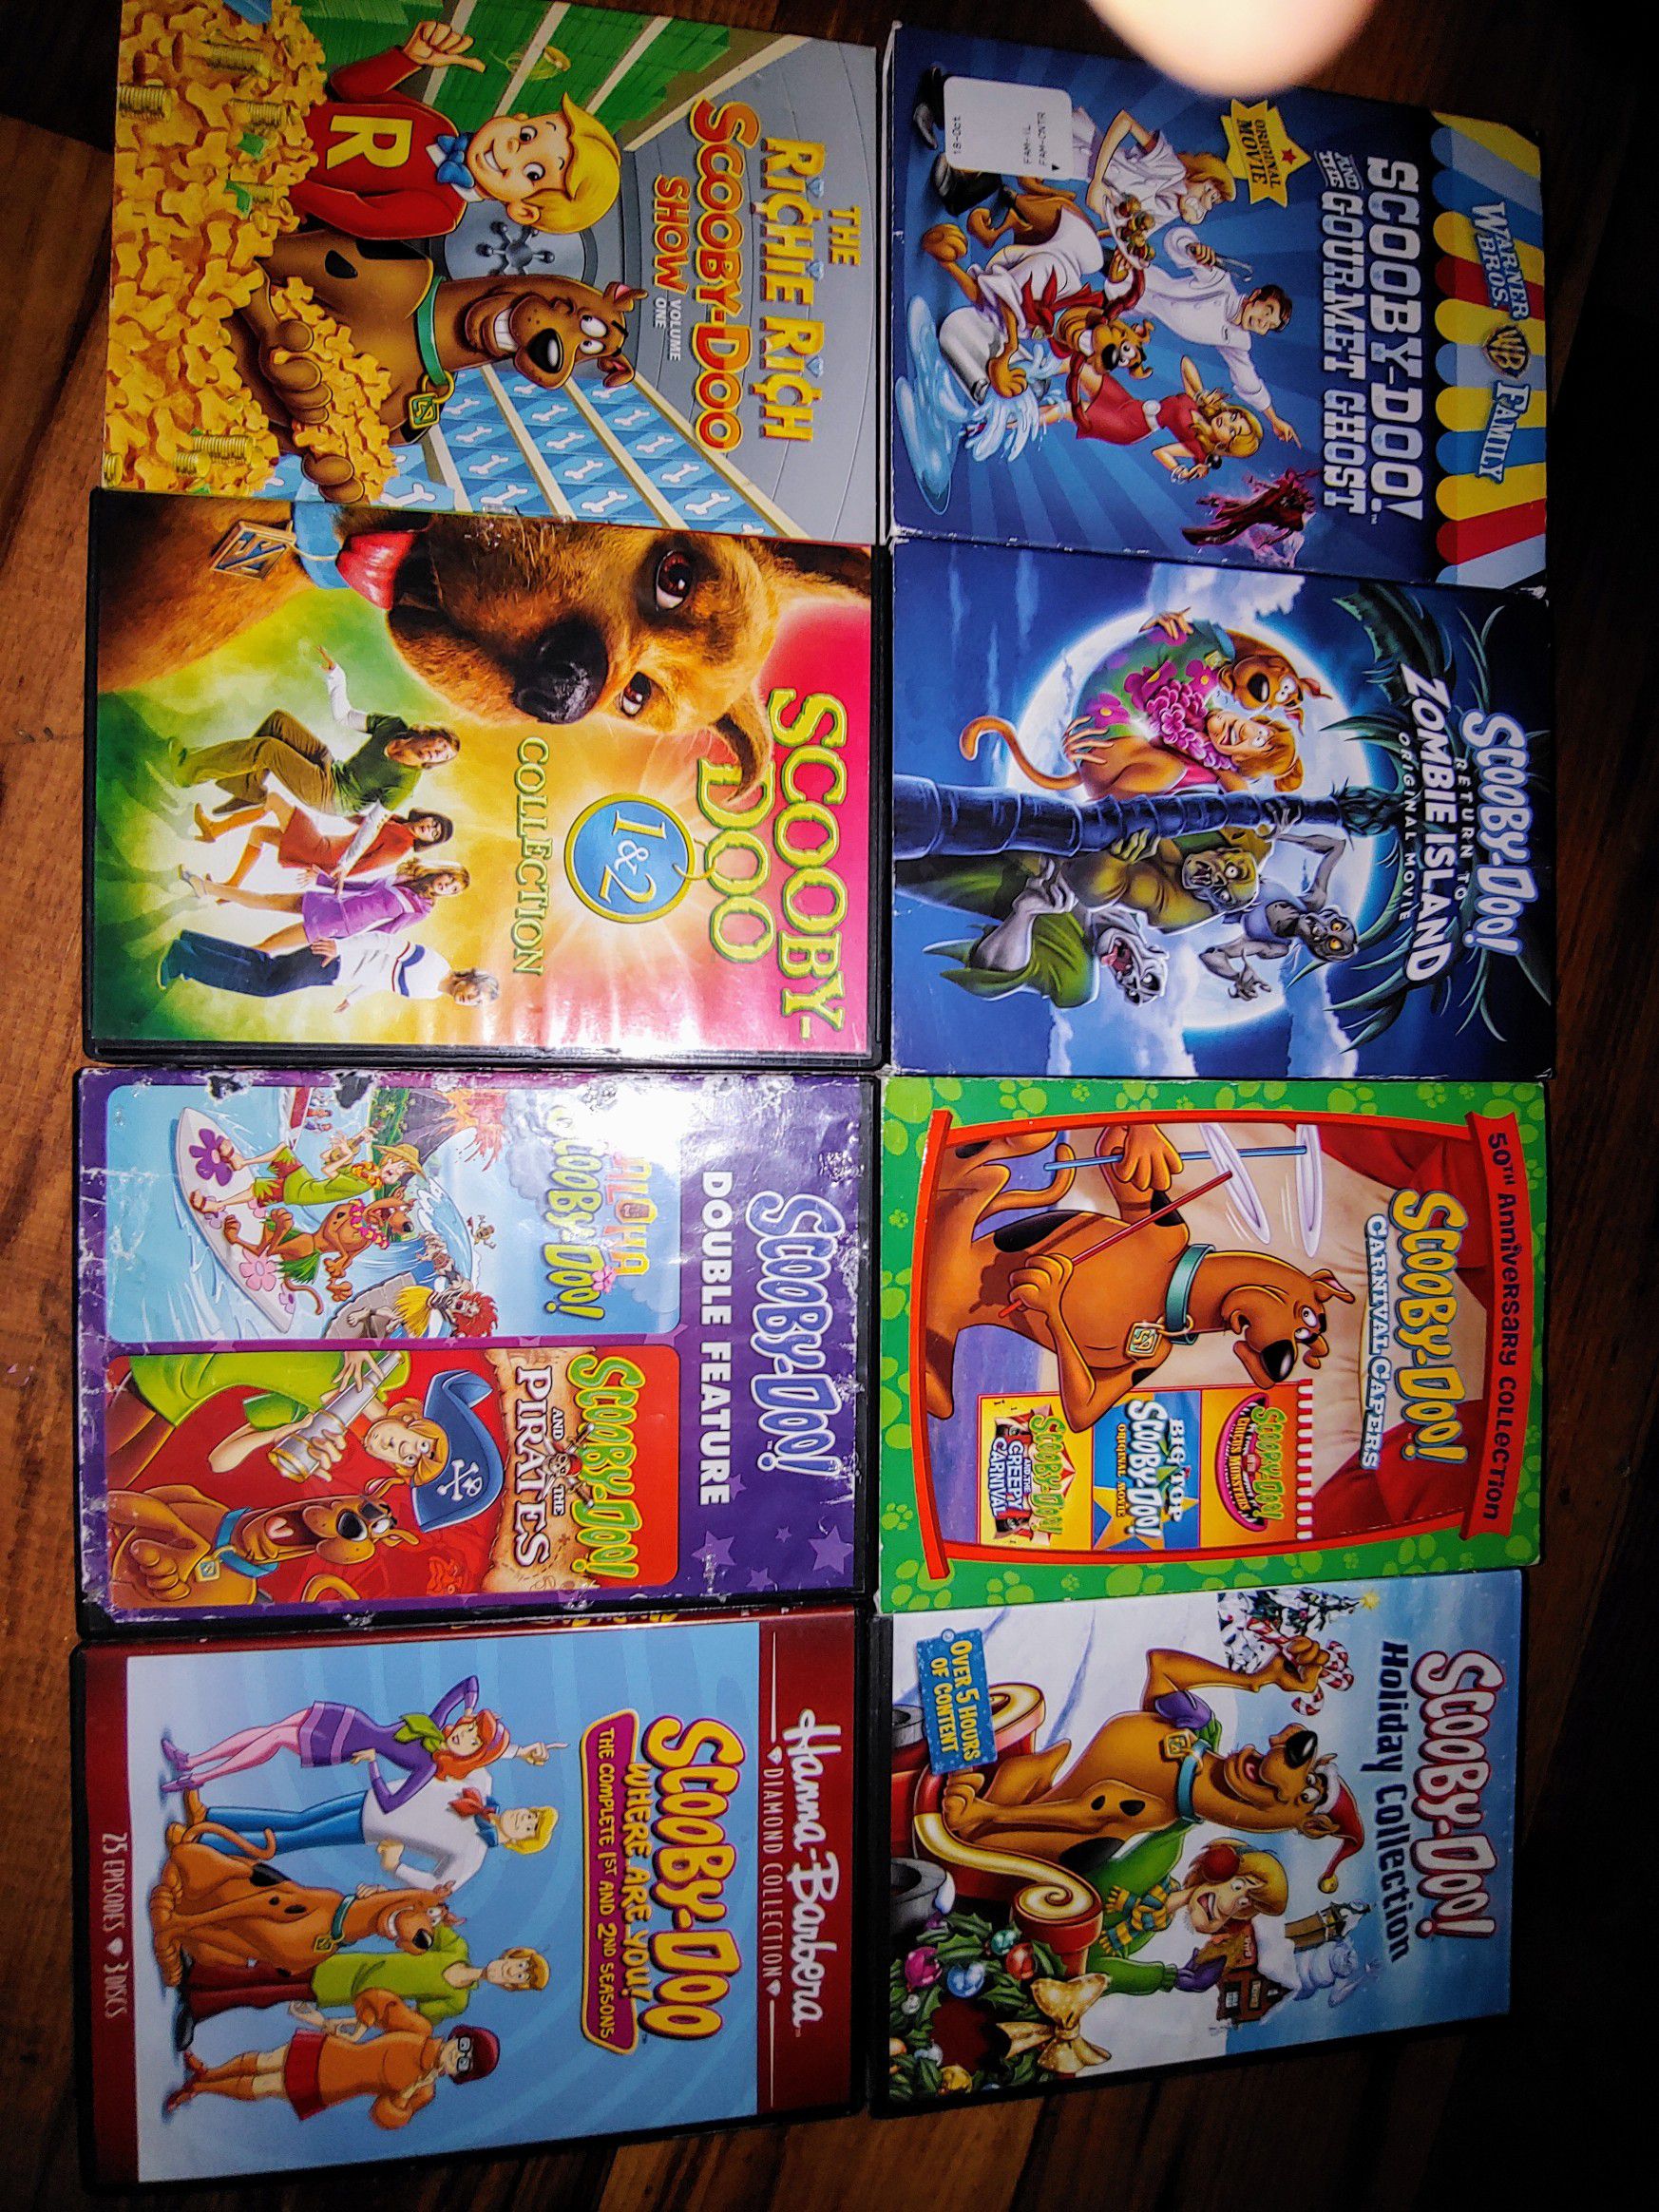 Scooby doo dvd set